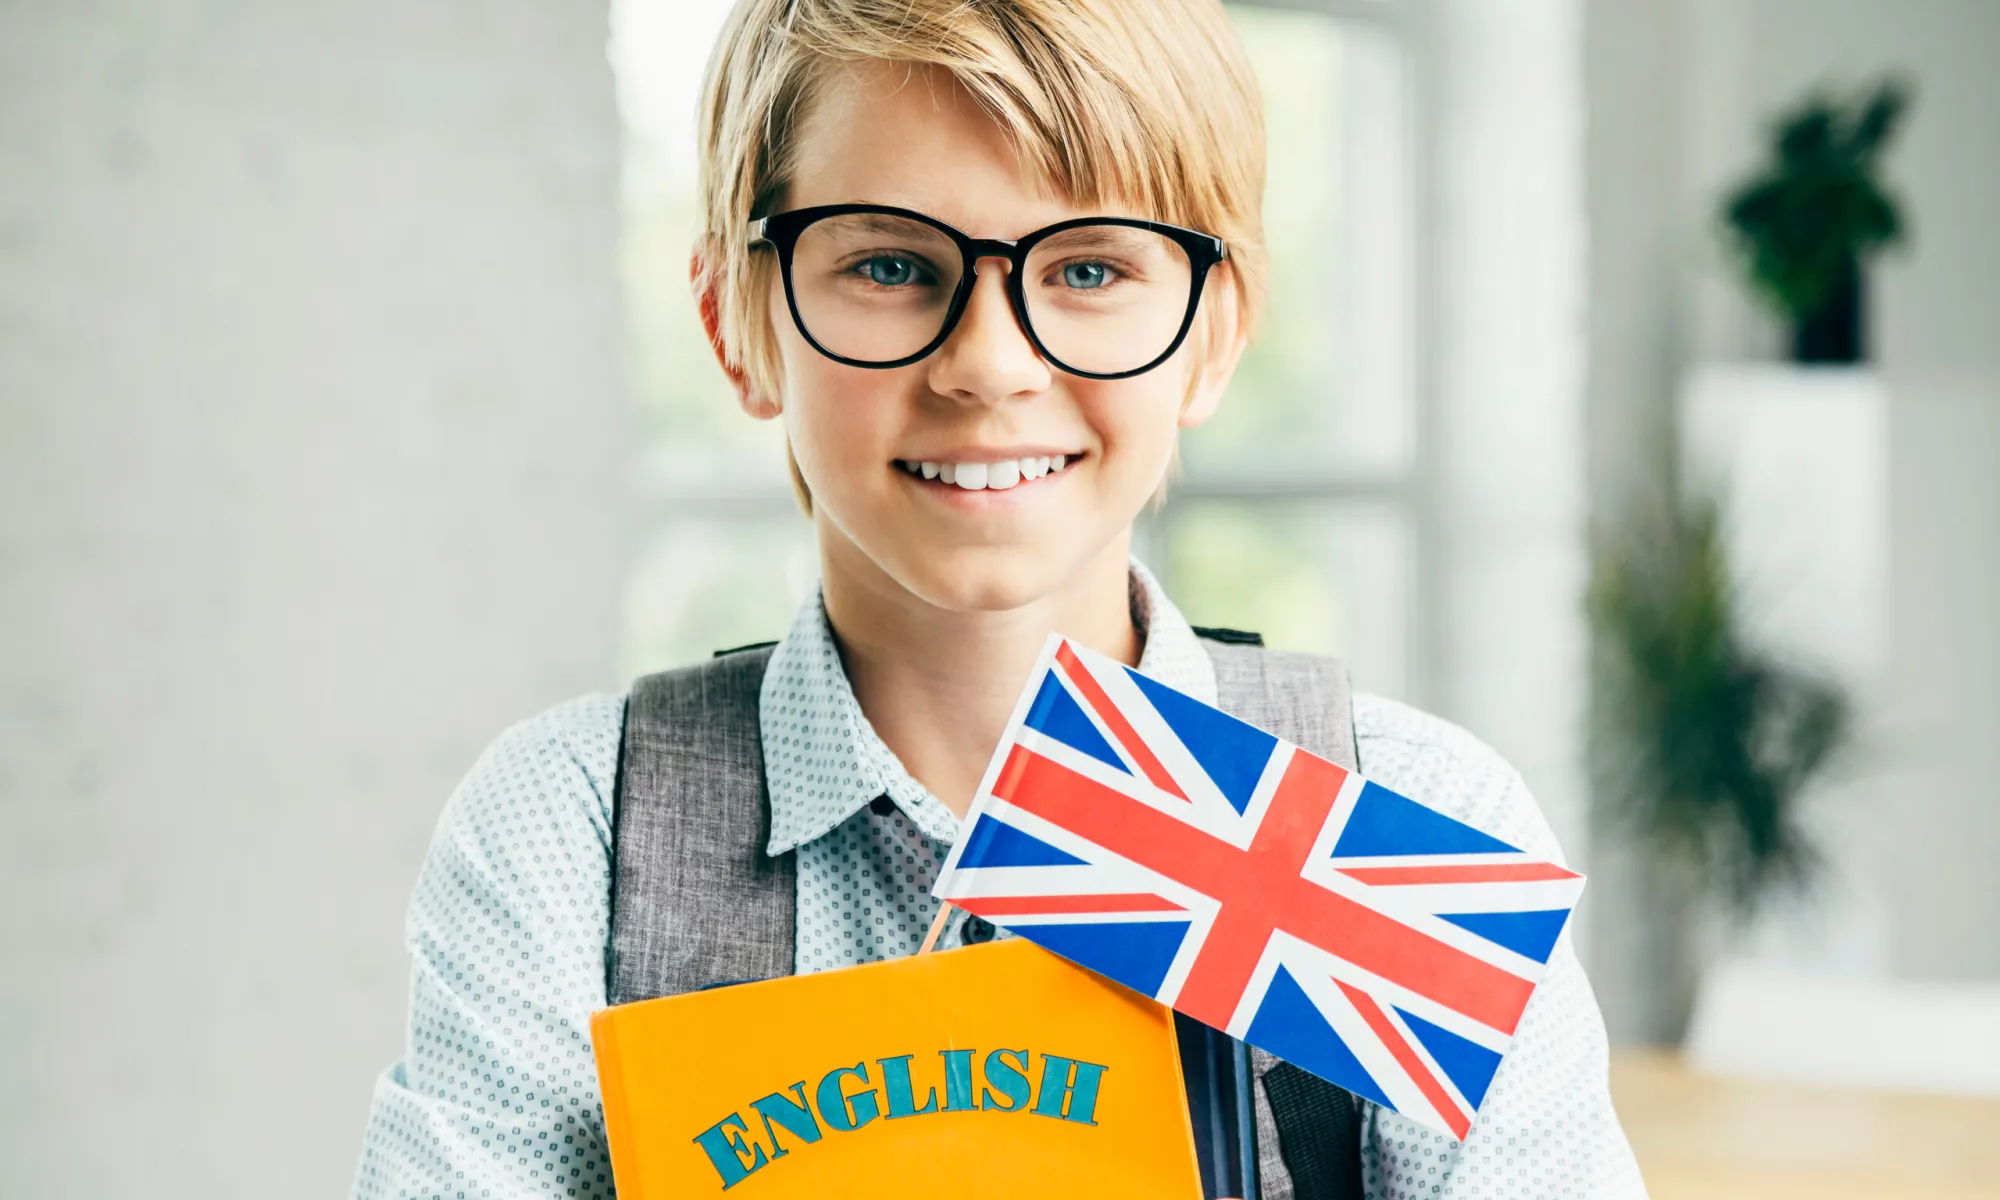 Cours d'anglais pour enfants : comment choisir une école de langue pour apprendre l'anglais